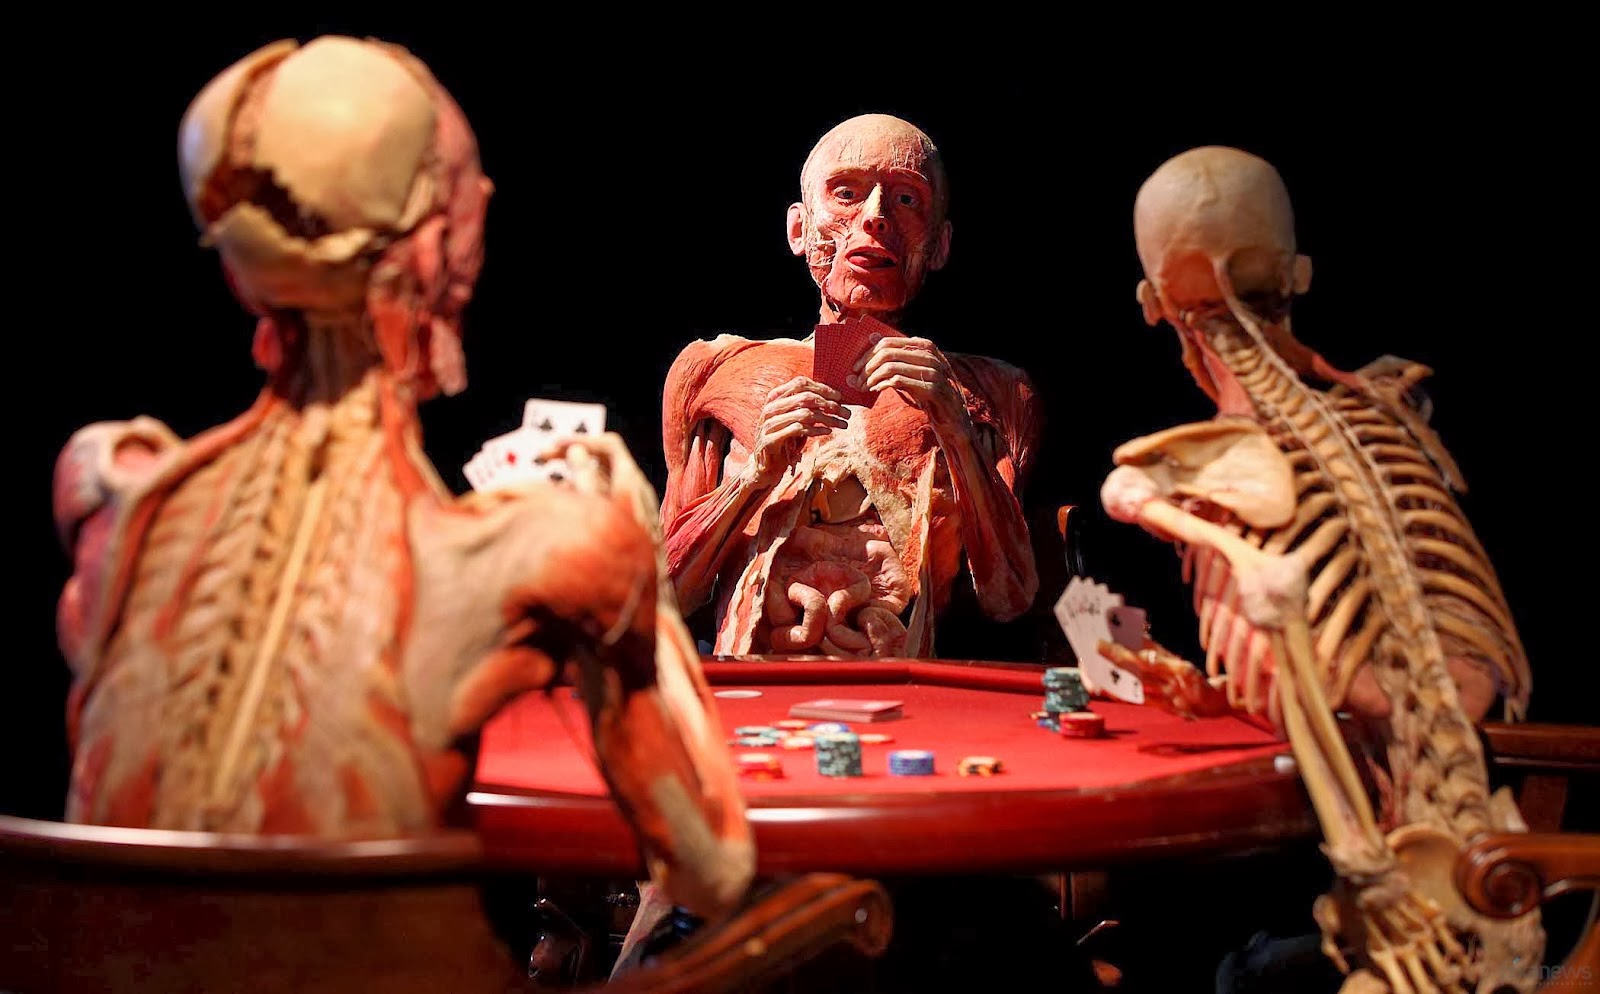 Real bodies, il corpo umano in mostra a Roma dall’8 aprile